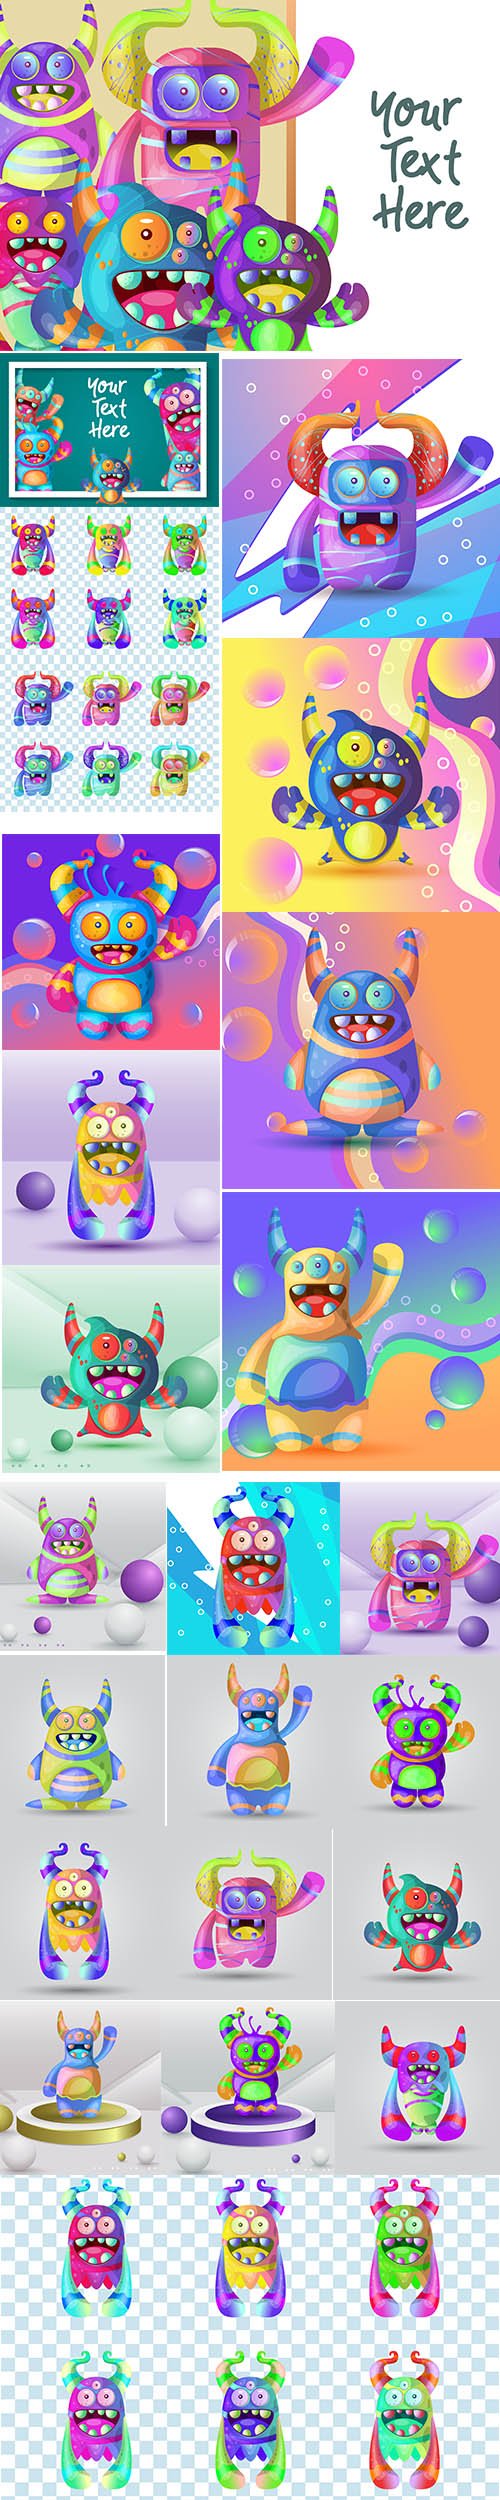 Set of Cute Cartoon Monster Illustrations